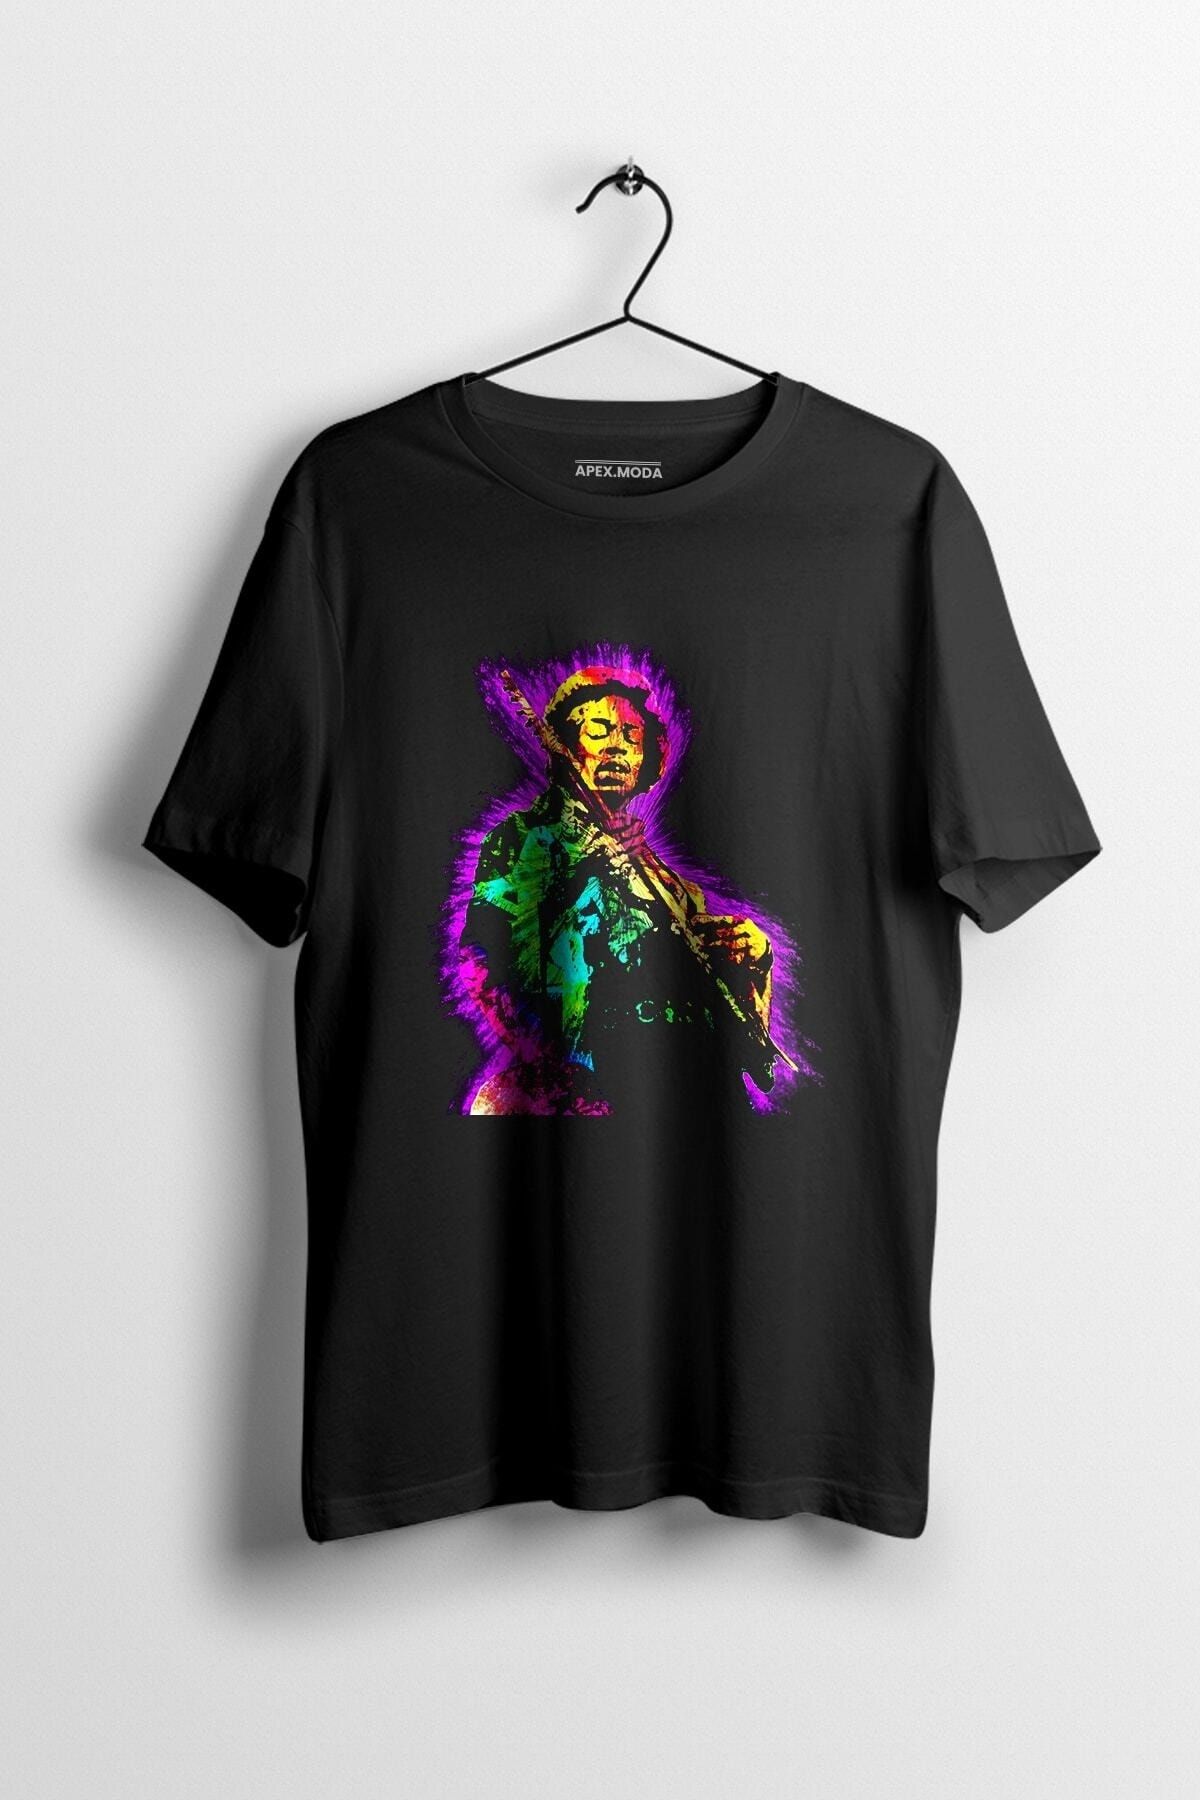 WePOD Jimi Hendrix Baskılı Tişört Baskılı Siyah Kısa Kollu Unisex Tişört